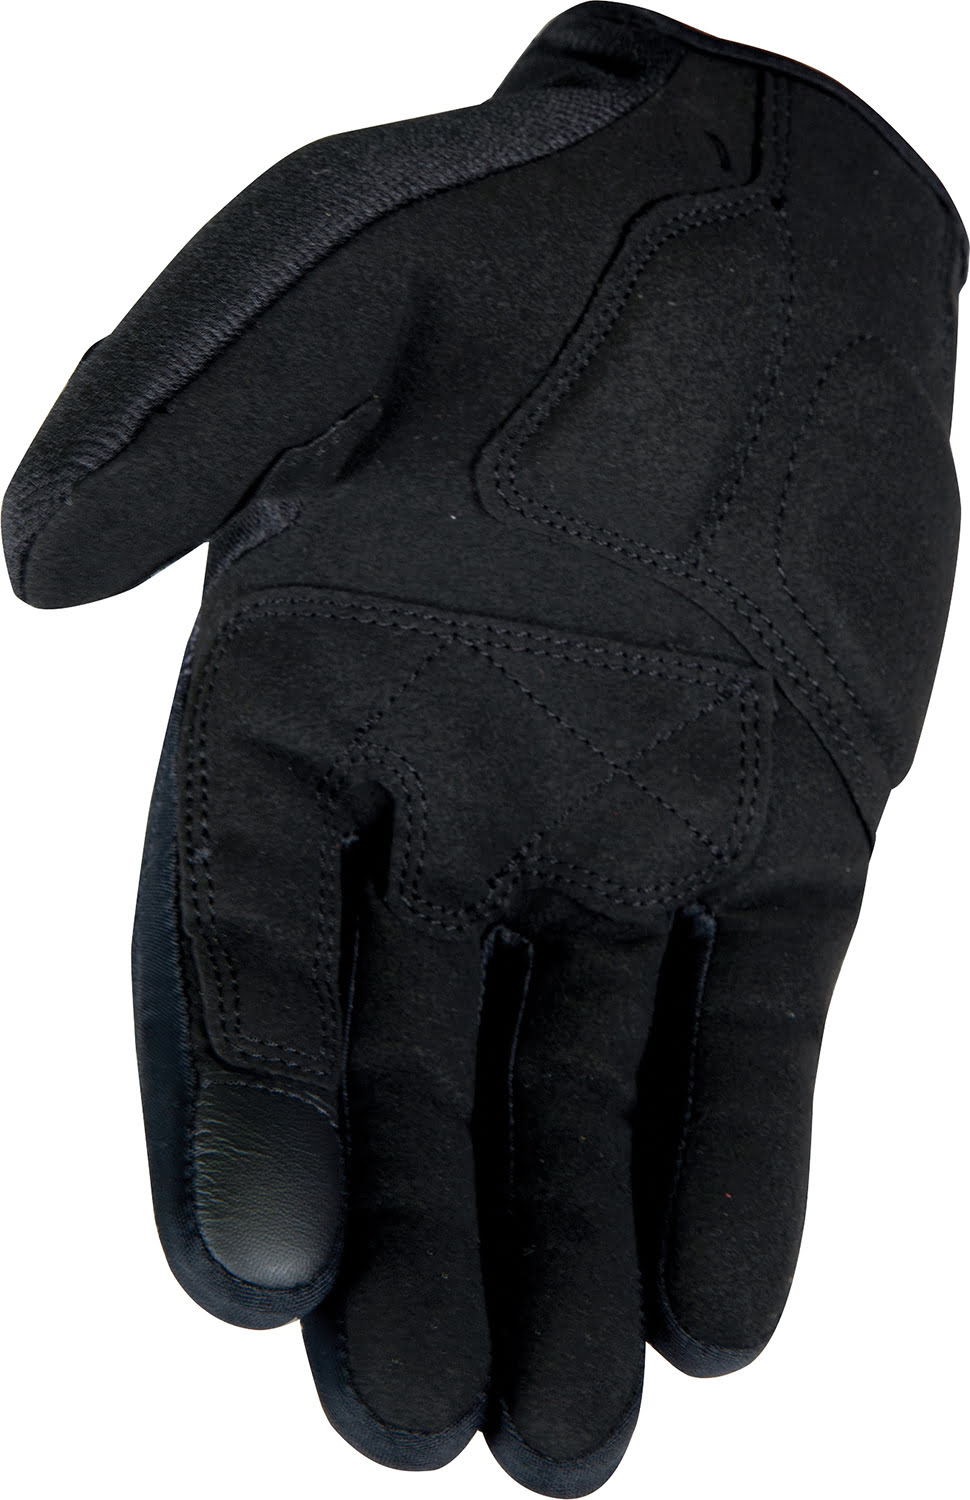 Gloves BOOST 2.0 Black STORMER 